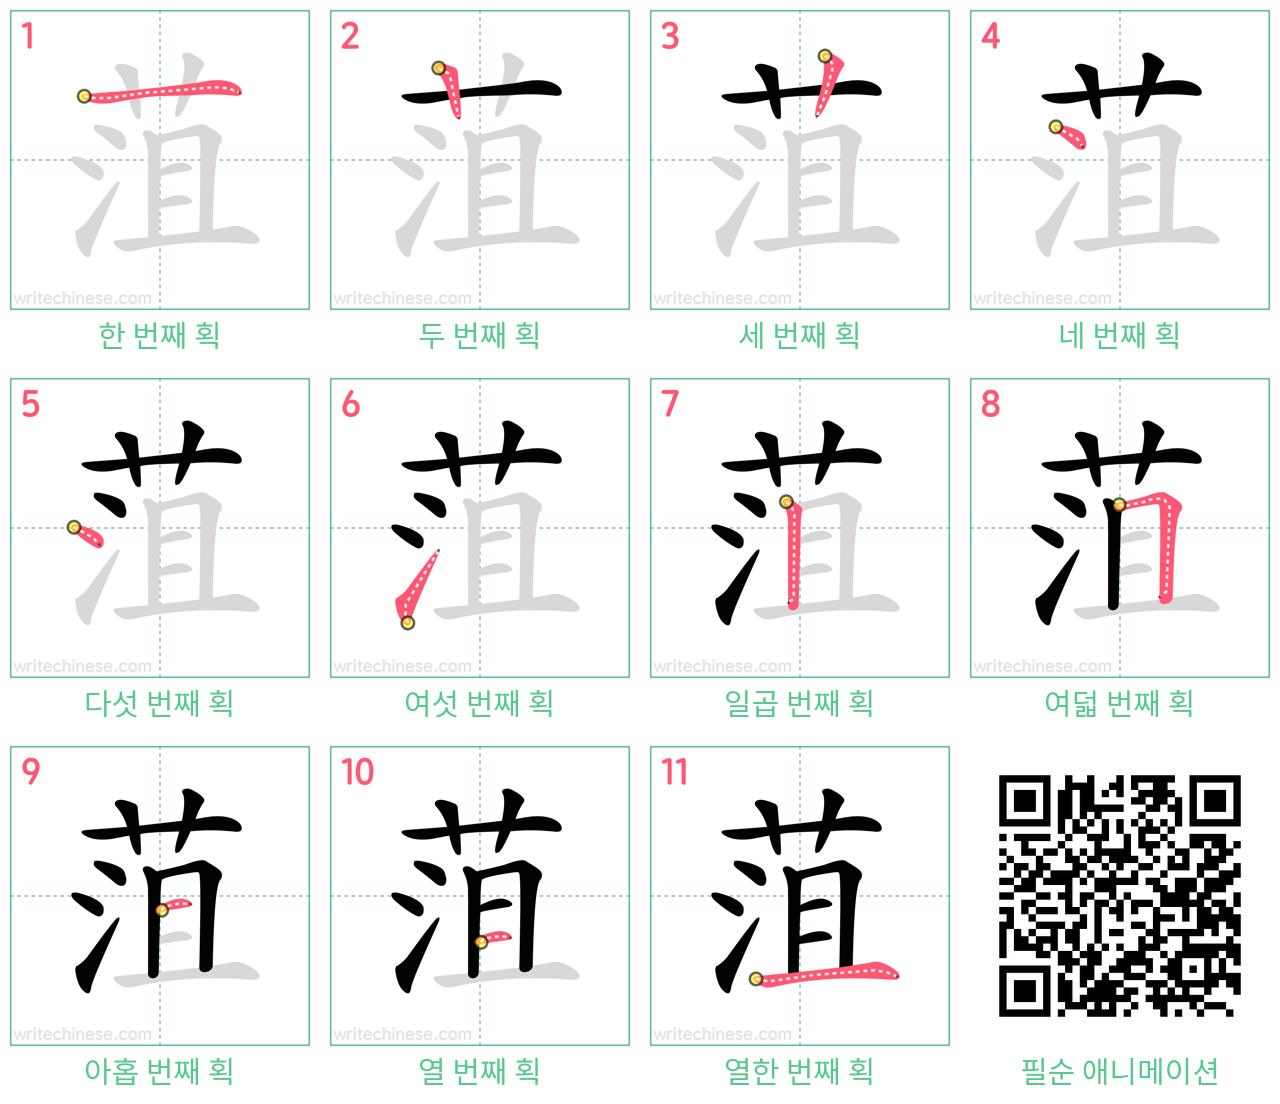 菹 step-by-step stroke order diagrams